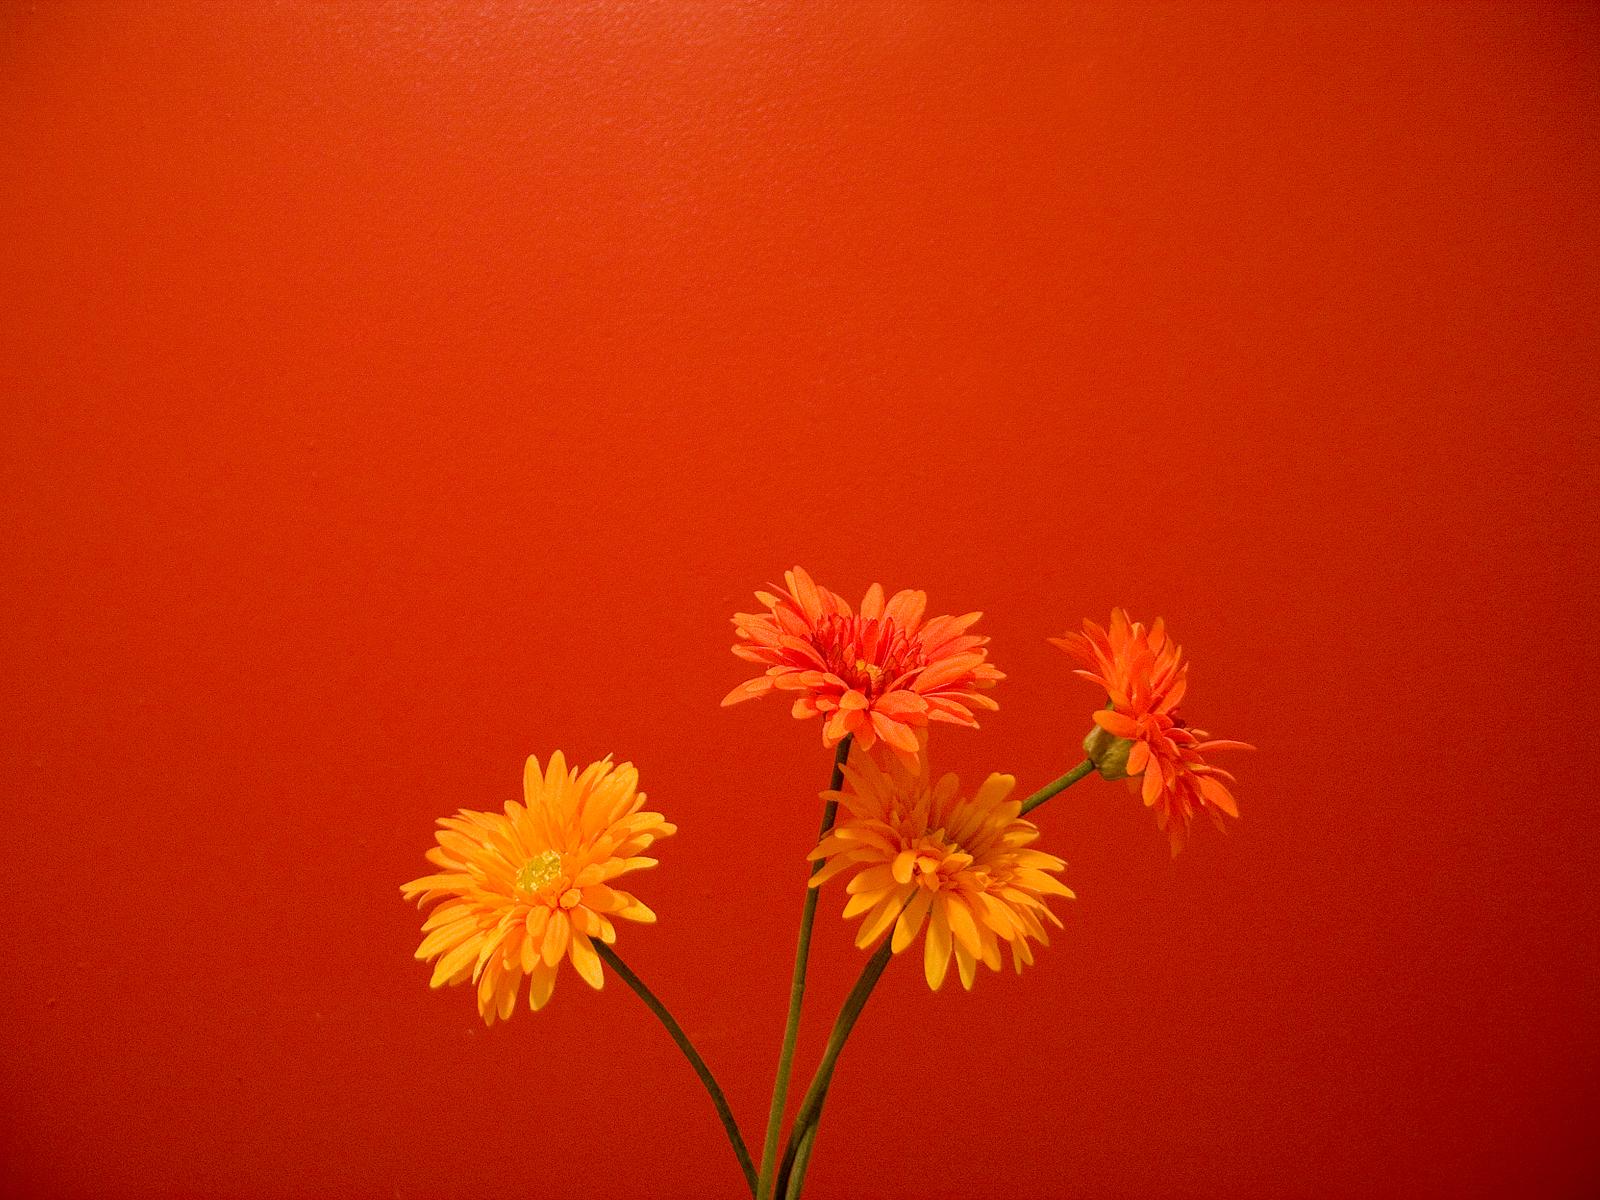 次のオレンジ色の壁紙,花,開花植物,オレンジ,赤,バーバートンデイジー